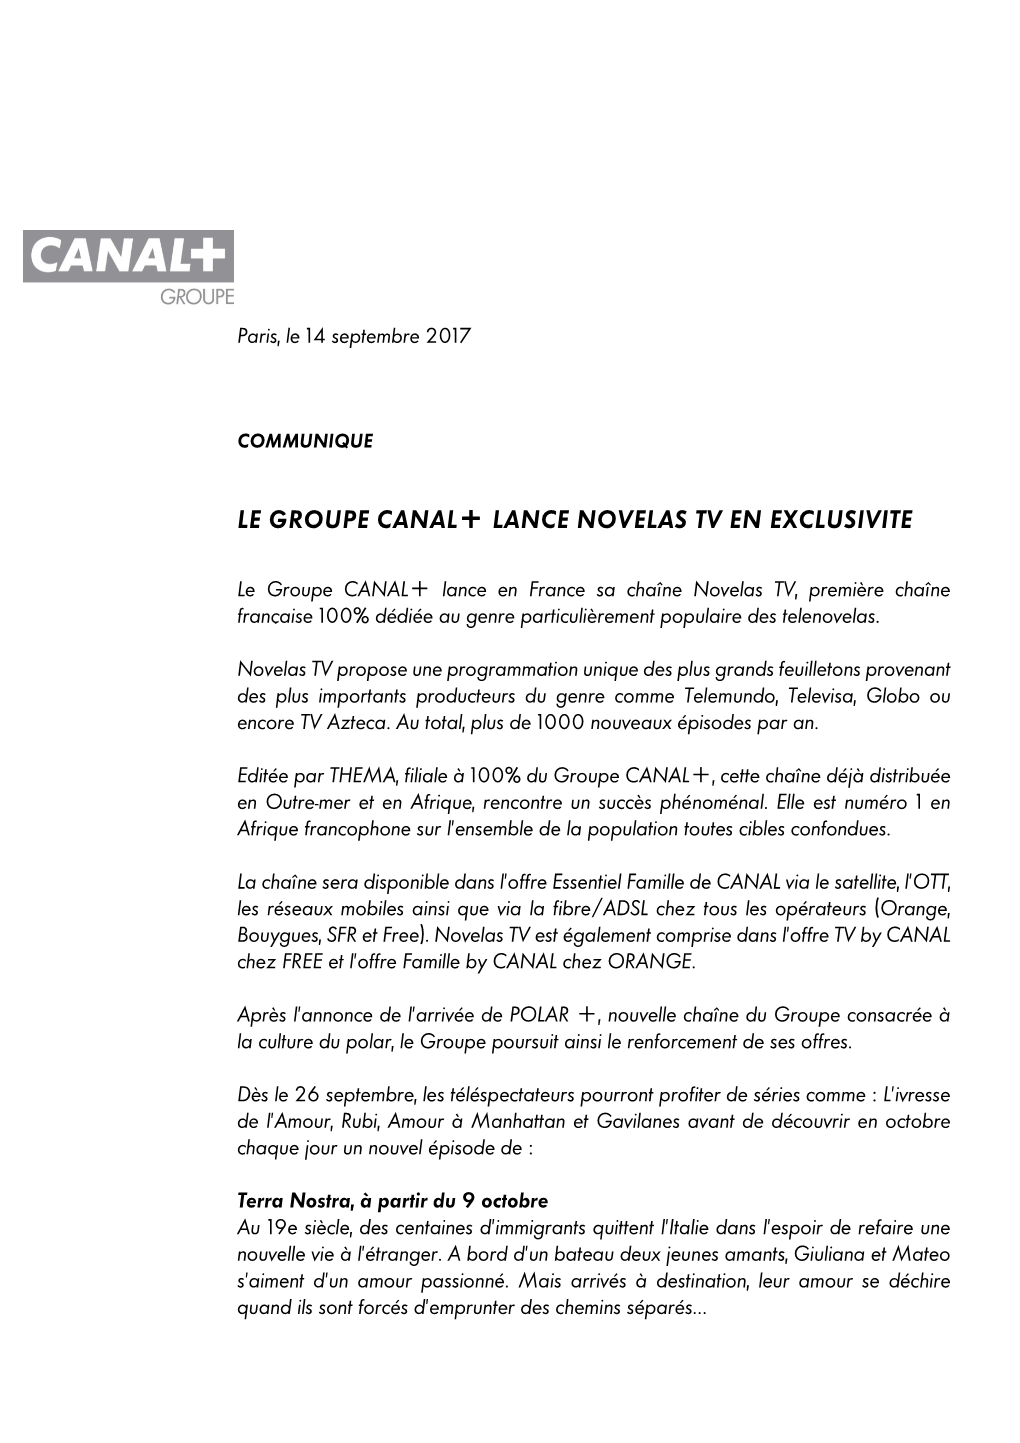 Communiqué Groupe Canal+ Lancement NOVELAS TV